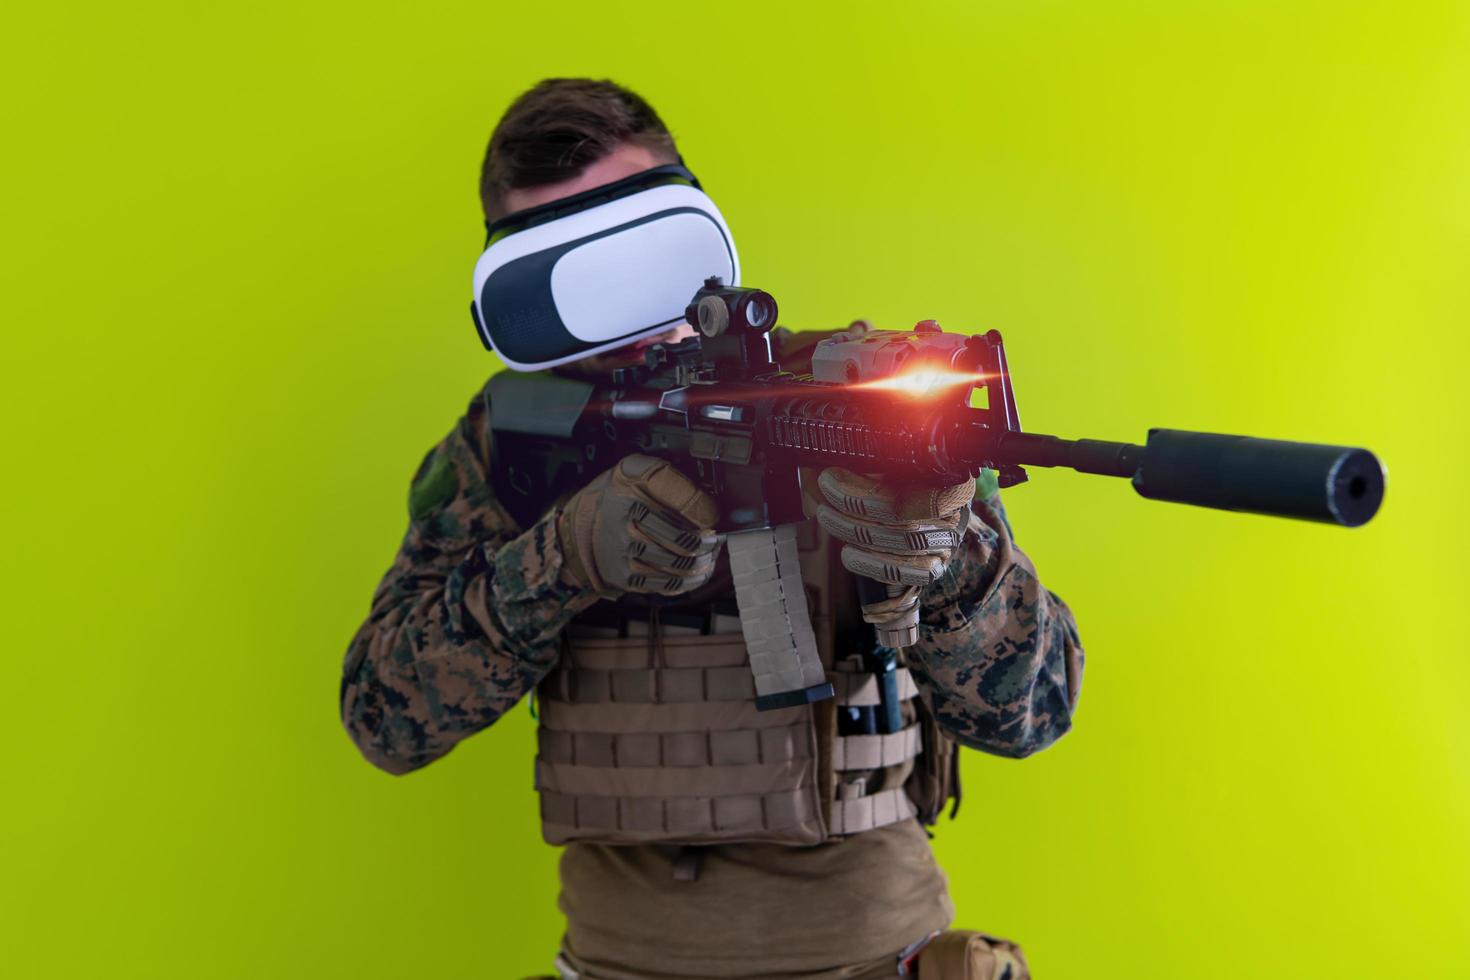 soldaat virtueel realiteit groen achtergrond foto